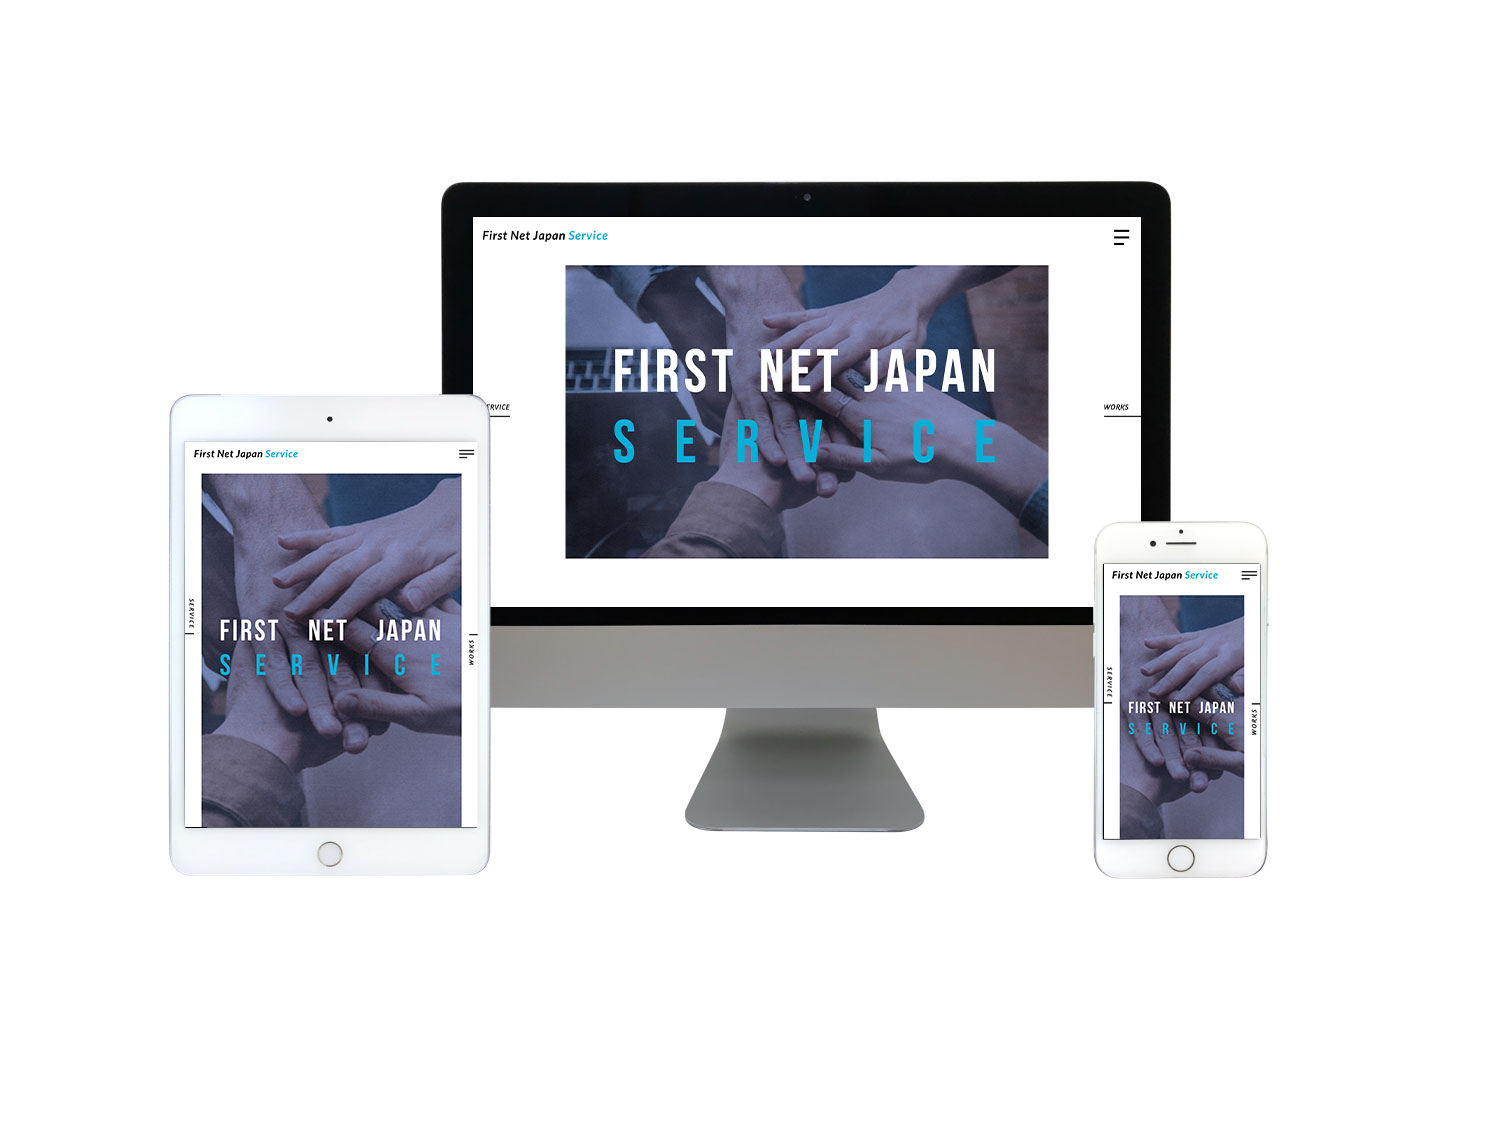 First Net Japan Service